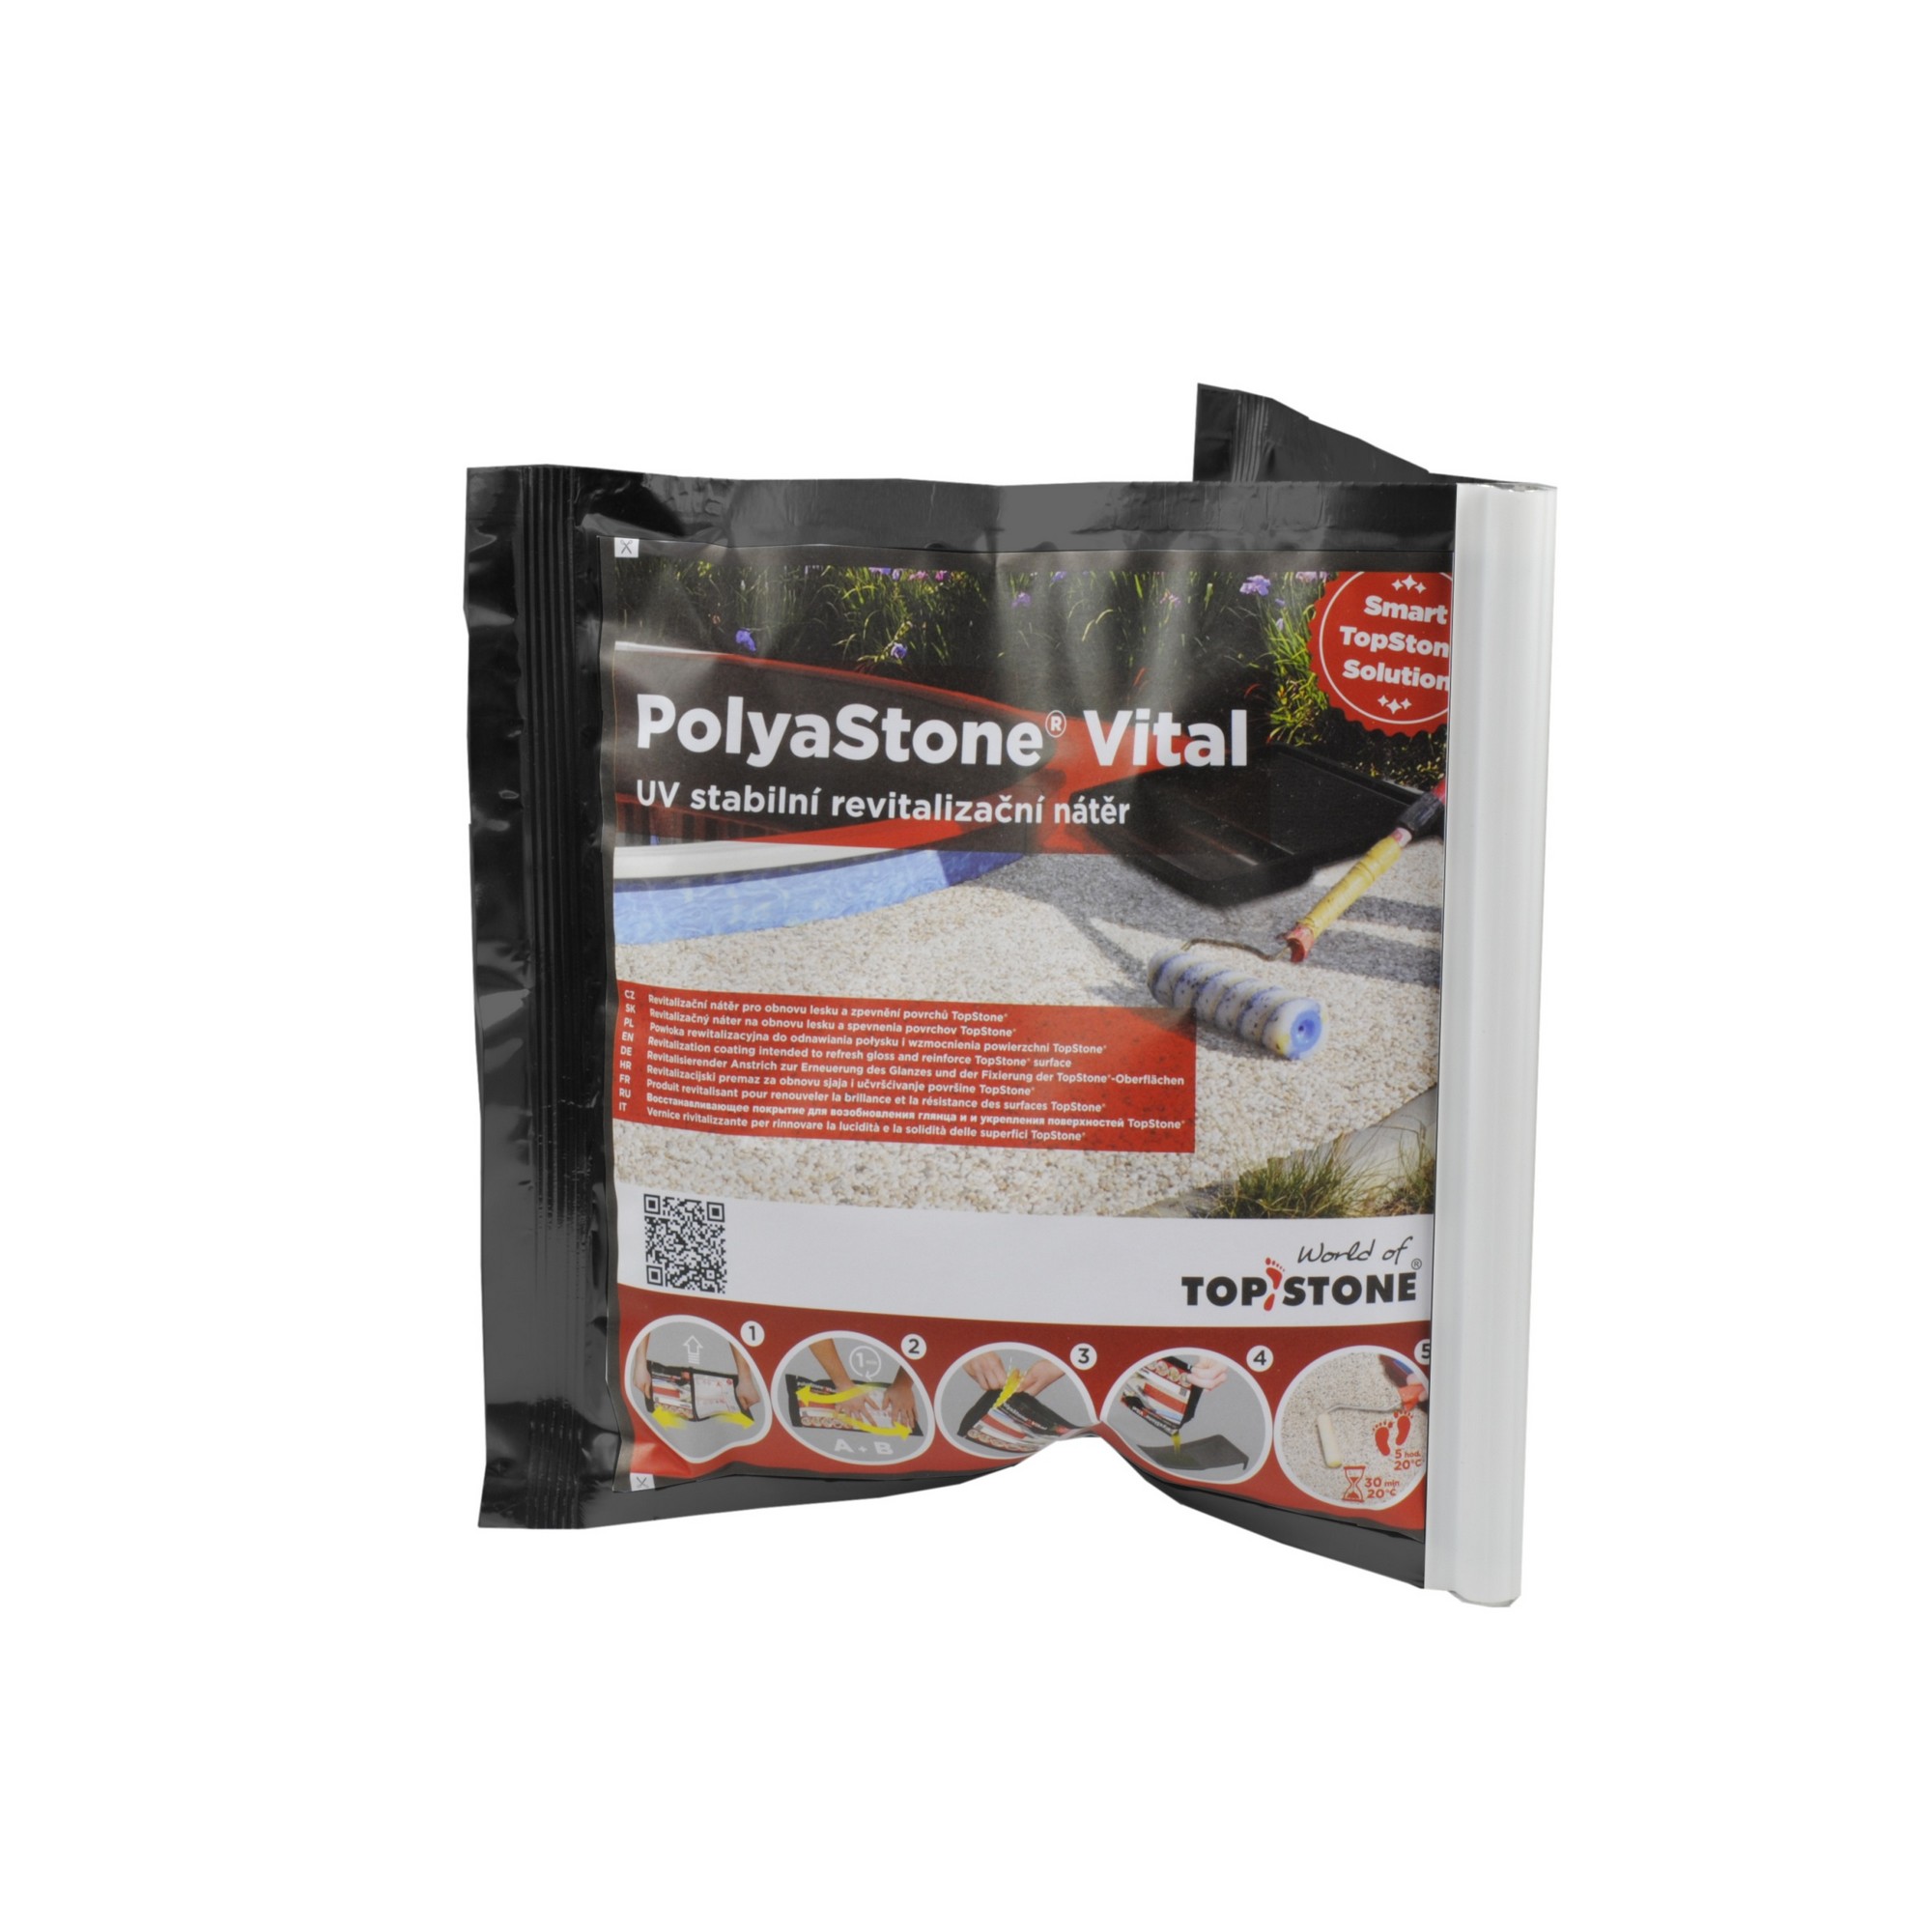 Nátěr revitalizační TopStone PolyaStone Vital 1 kg/bal. TopStone